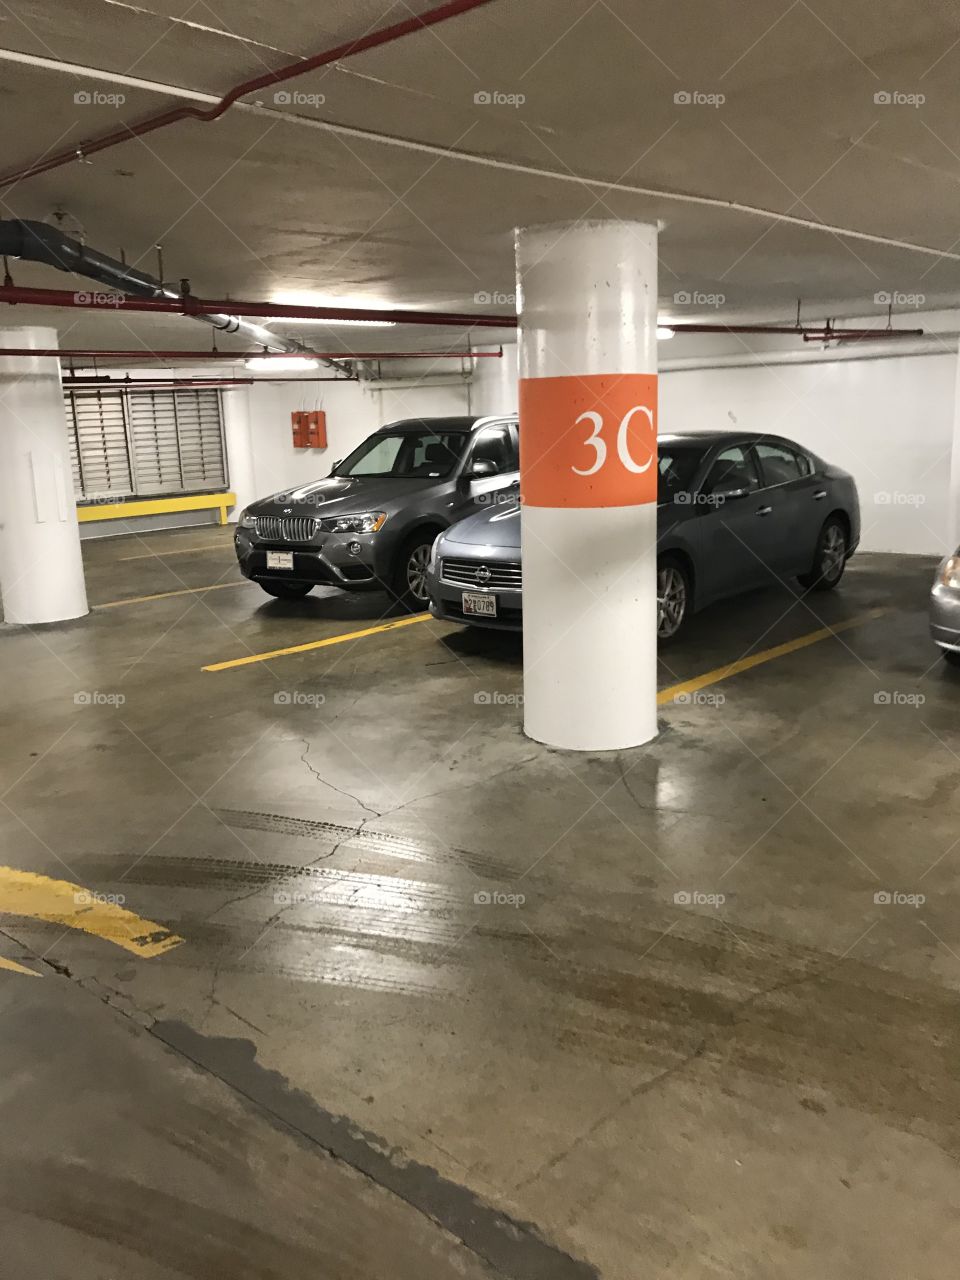 Cars parked in an underground parking garage 